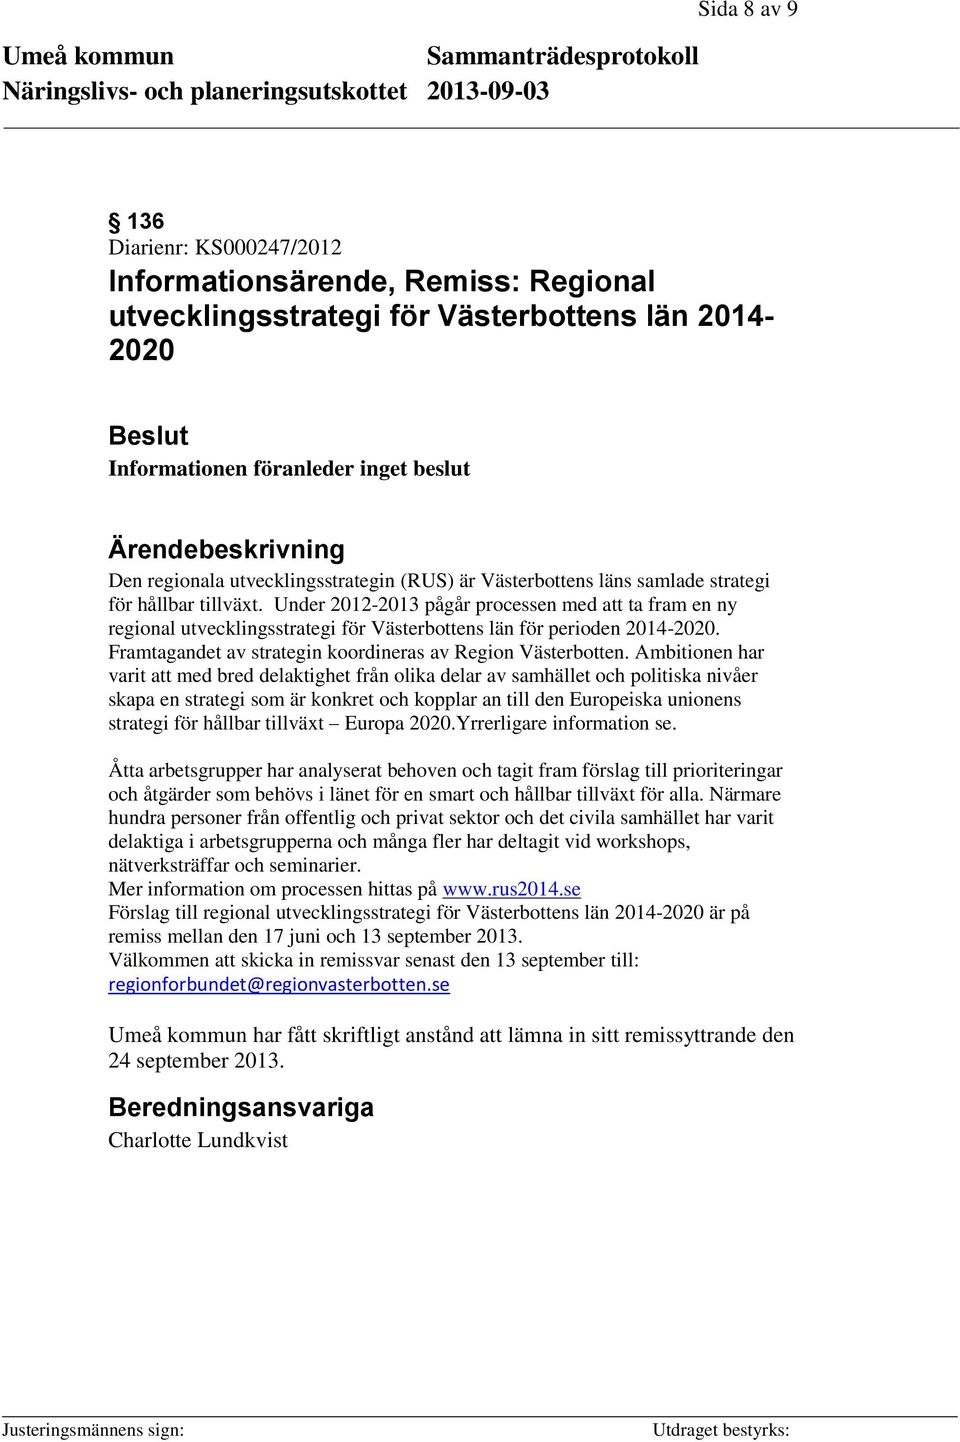 Under 2012-2013 pågår processen med att ta fram en ny regional utvecklingsstrategi för Västerbottens län för perioden 2014-2020. Framtagandet av strategin koordineras av Region Västerbotten.